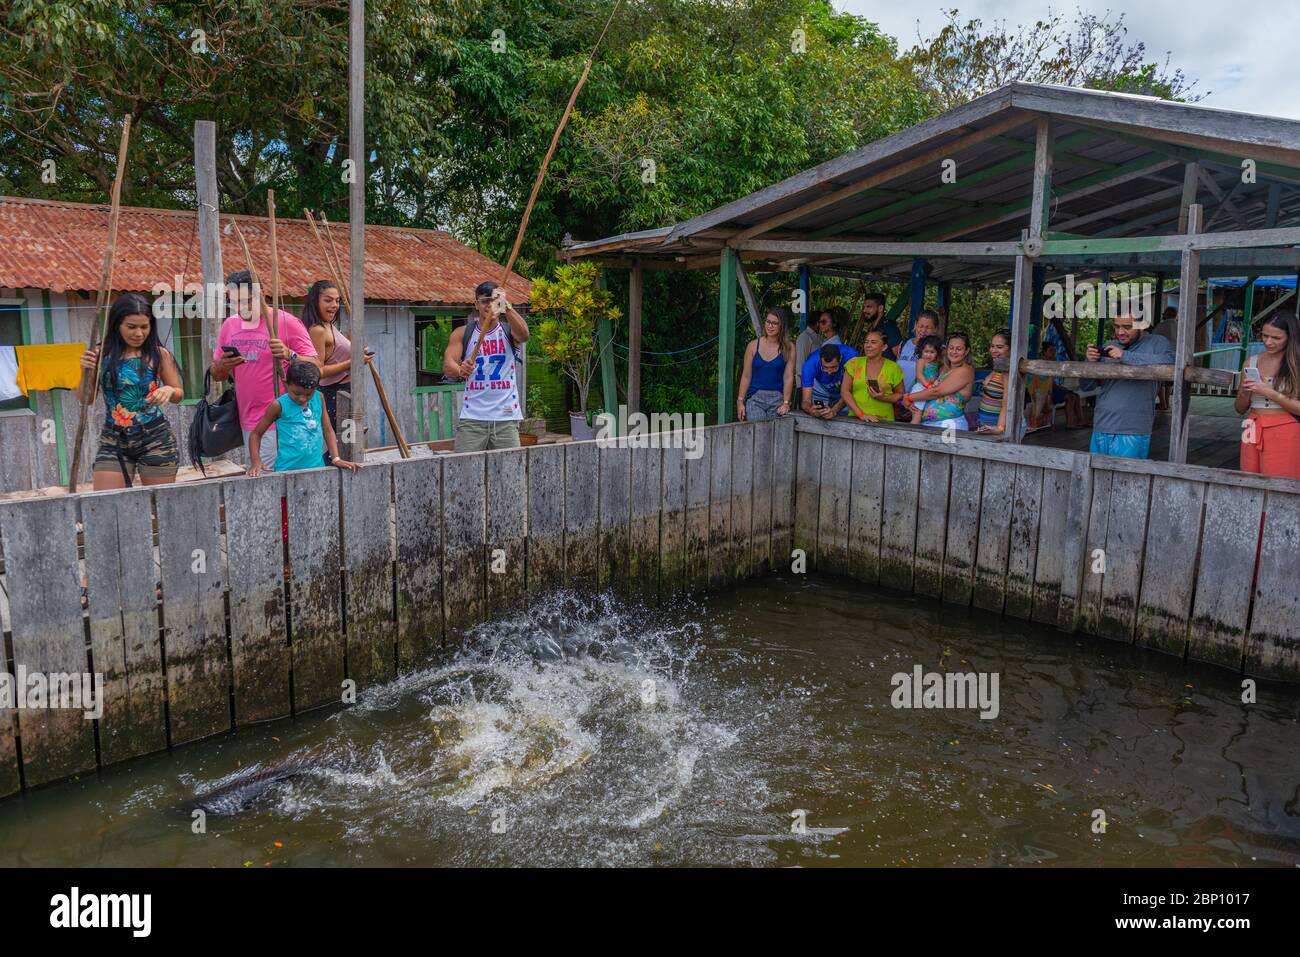 Pêche piranha en captivité comme une attraction touristique, rivière Amazonas près de Manaus, l'Amazone, Brésil, Amérique latine Banque D'Images